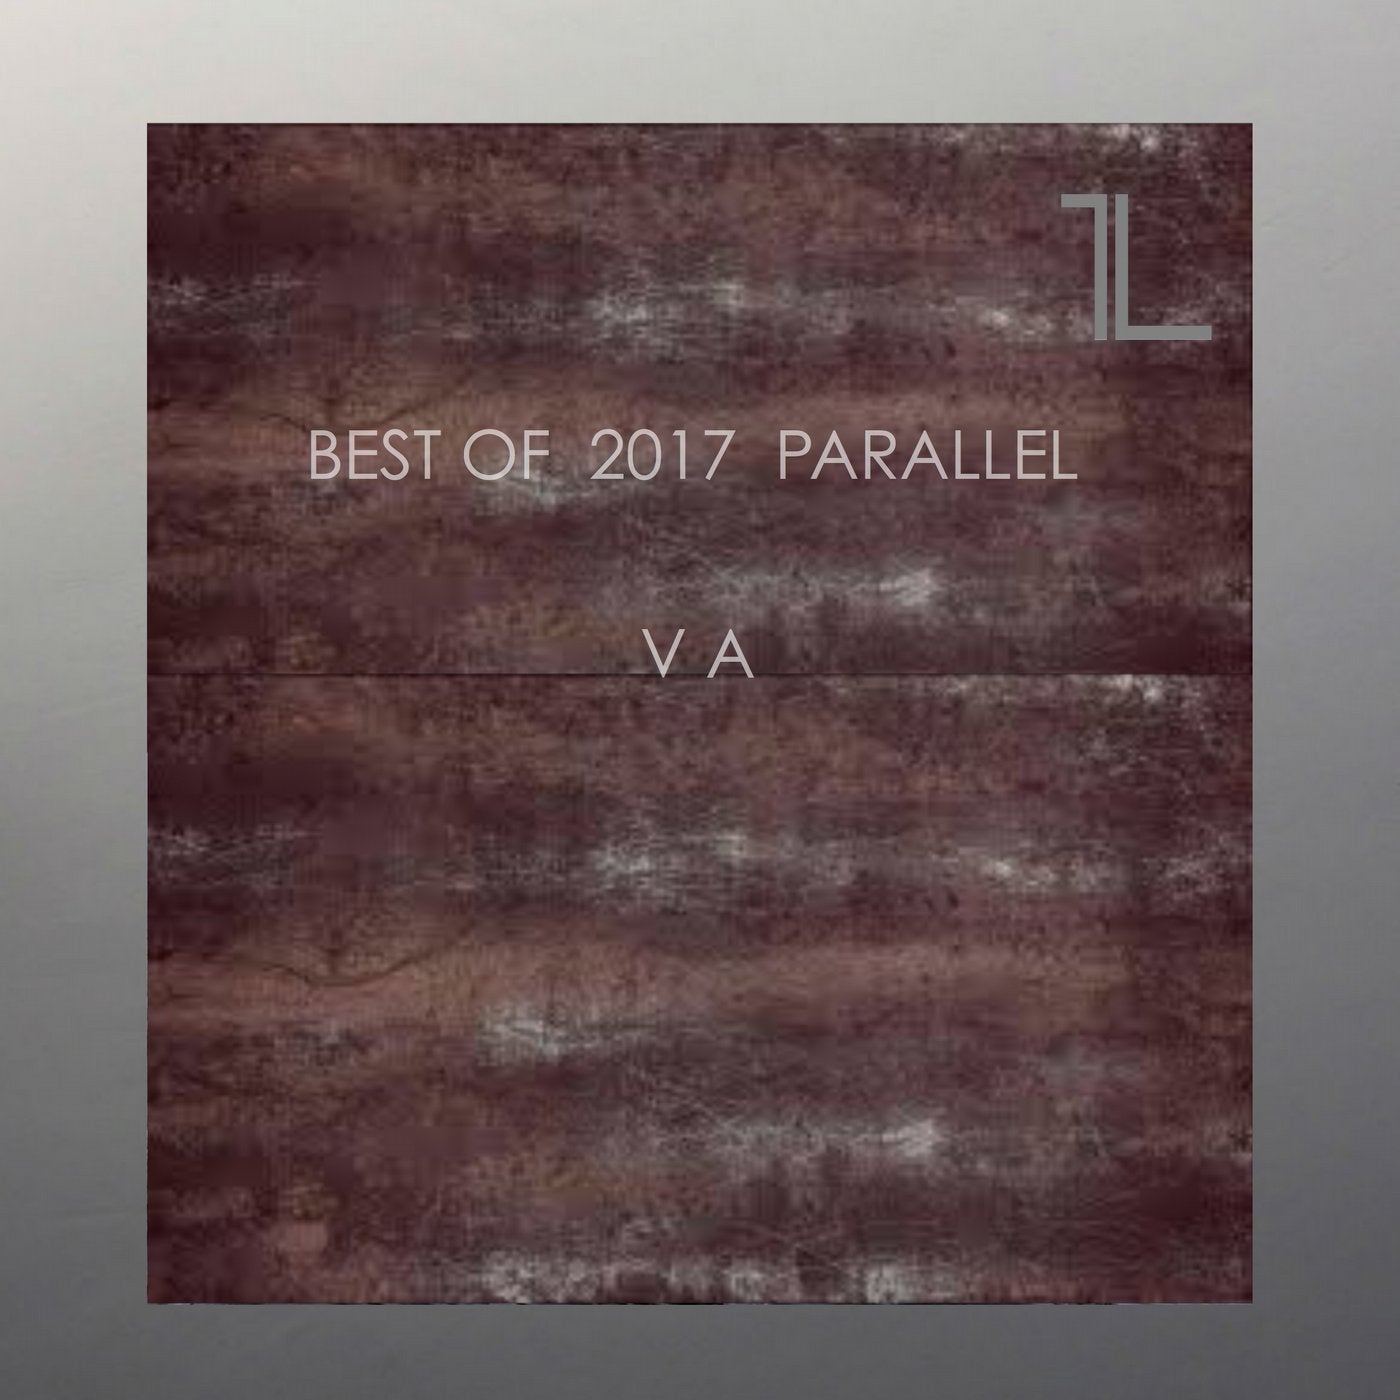 Best of 2017 Parallel